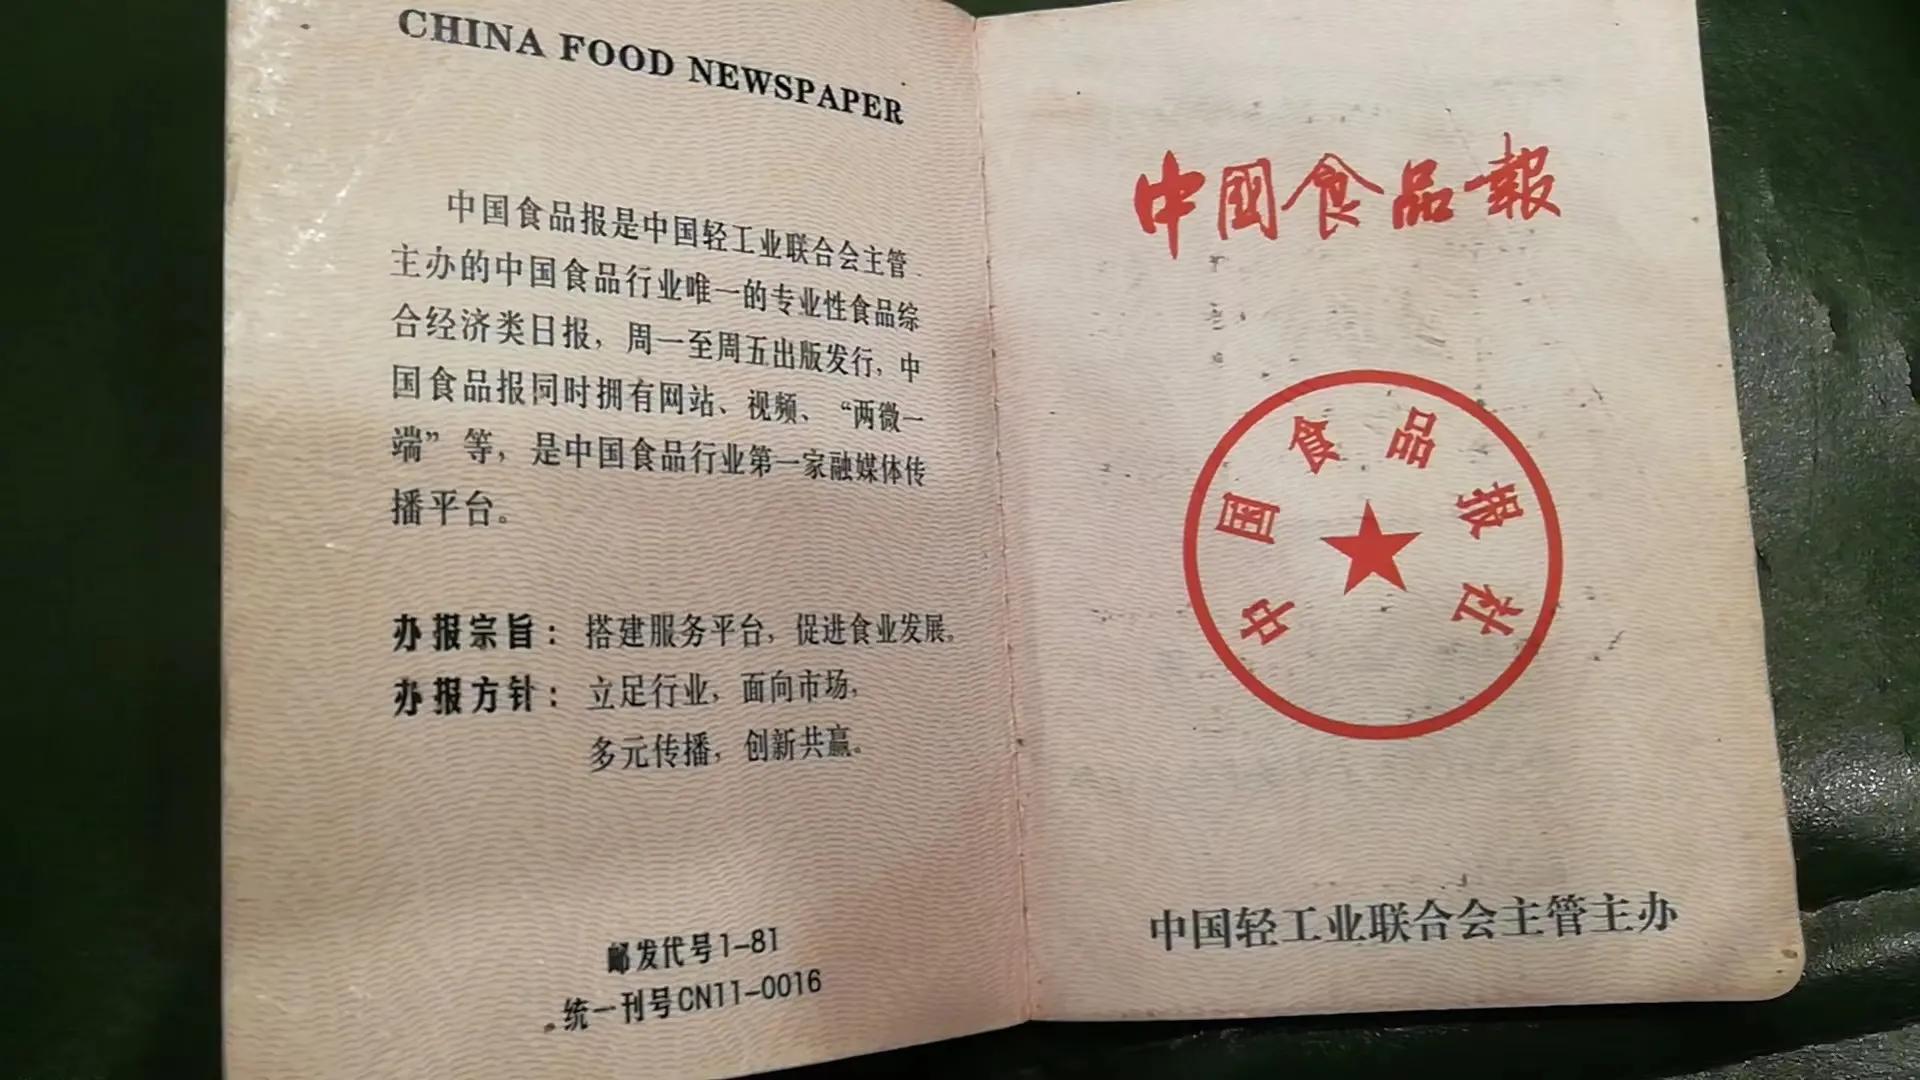 中国食品报成立分支机构欢迎加入